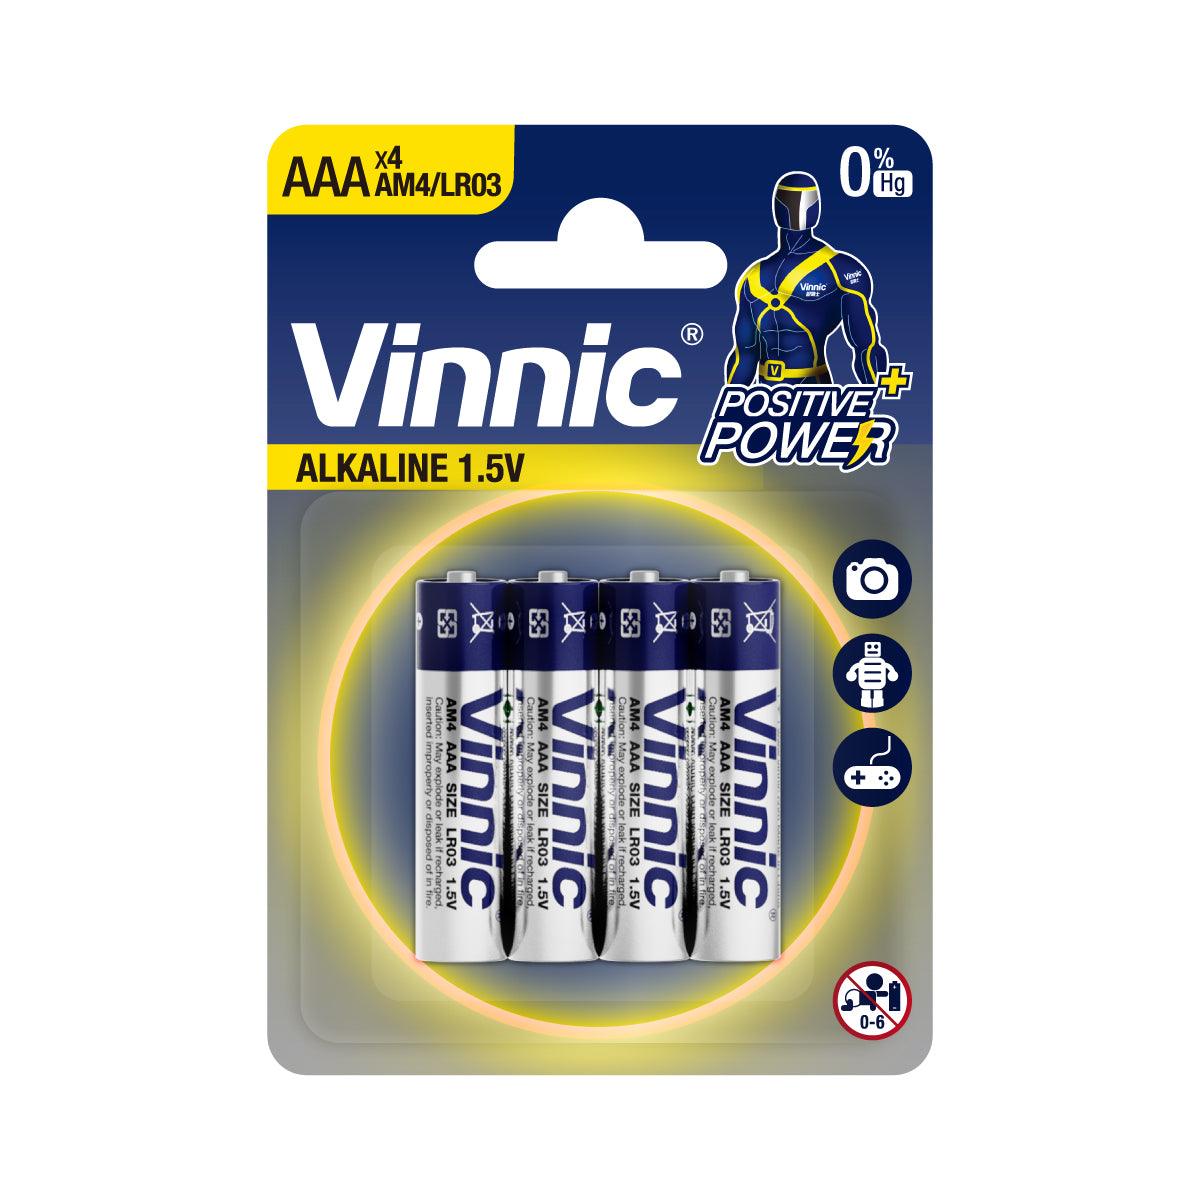 Vinnic Alkaline Battery AAA AM4 / LR03 (1.5V) - 4CountVinnic Alkaline Battery AAA AM4 / LR03 (1Vinnic Power